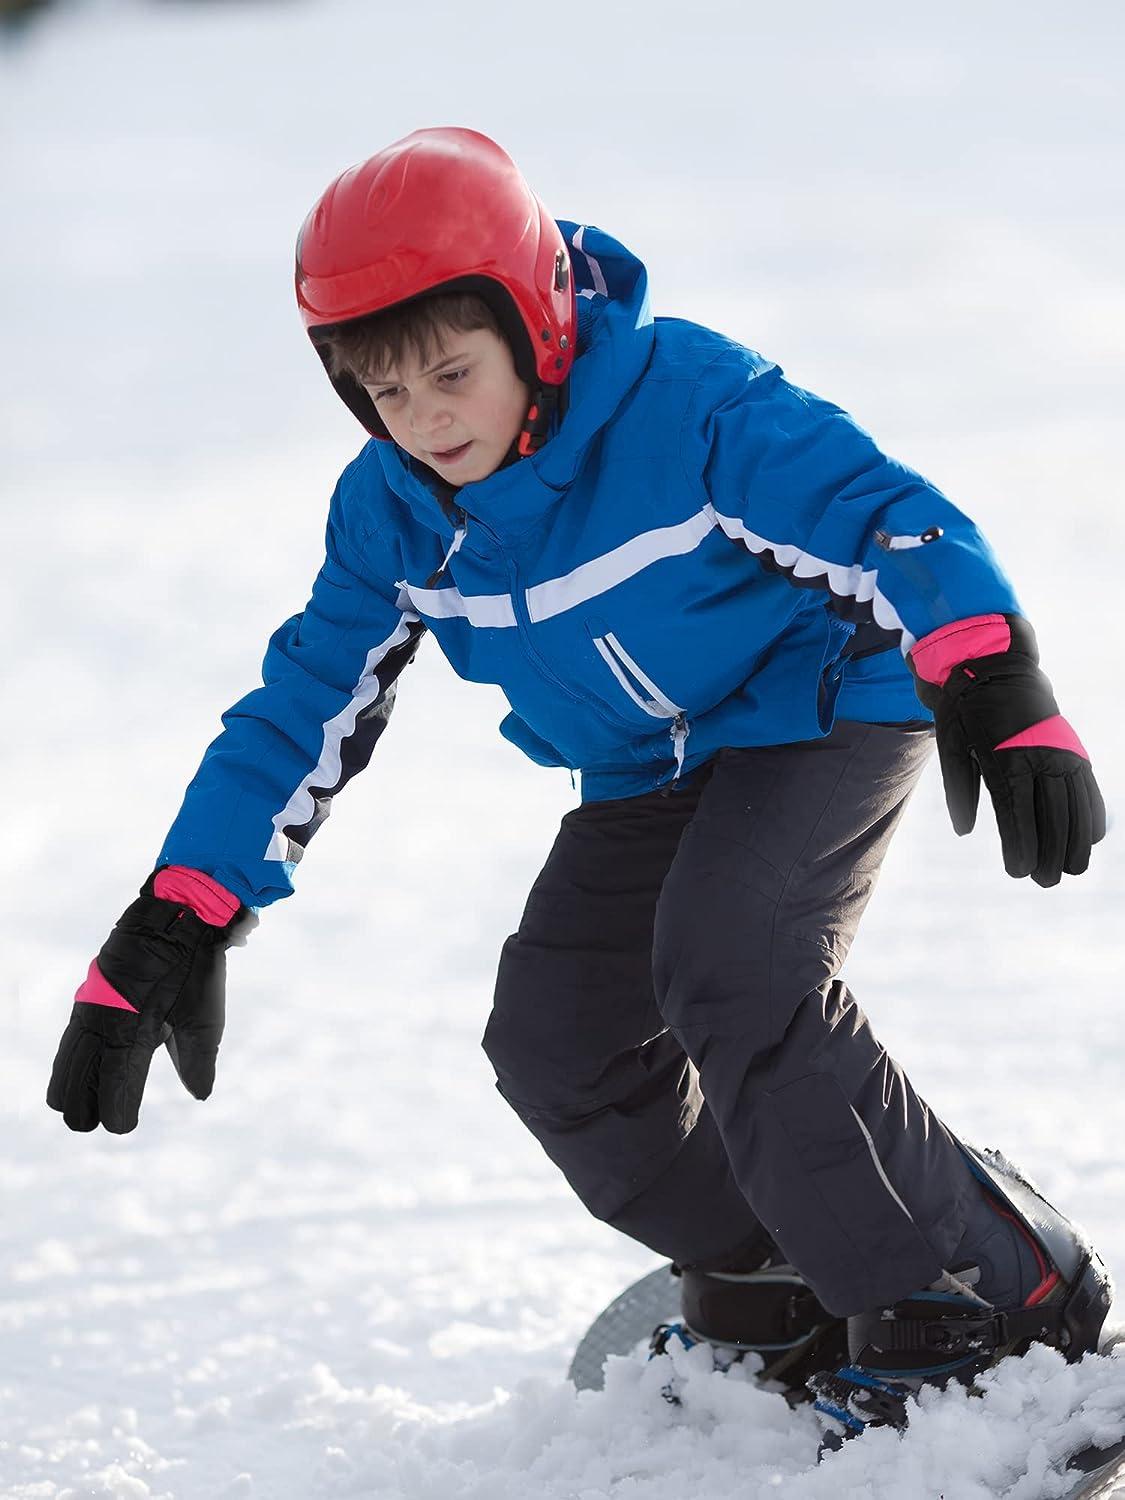 2 Pairs Kids Ski Gloves Winter Waterproof Gloves Children Warm